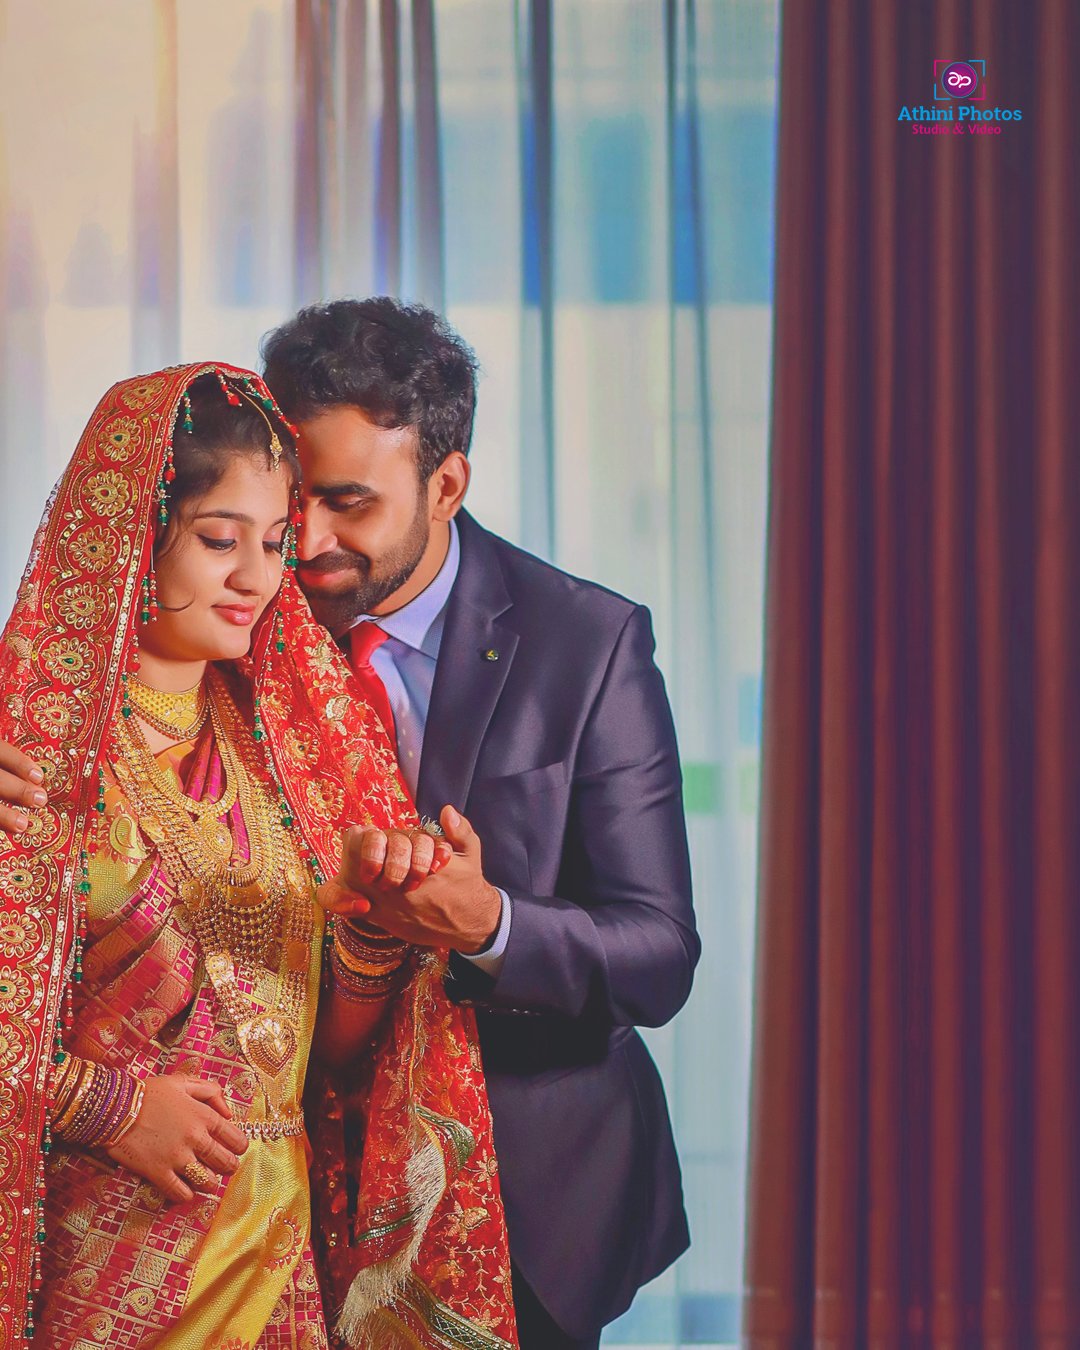 உள்ளாடையுடன் மணமகன்.. குளியல் டவலுடன் மணமகள்.. வெட்டிங் போட்டோ ஷூட்டா இது?  மேட்டரே வேற | Wedding photo shoot like picture goes viral - Tamil Oneindia